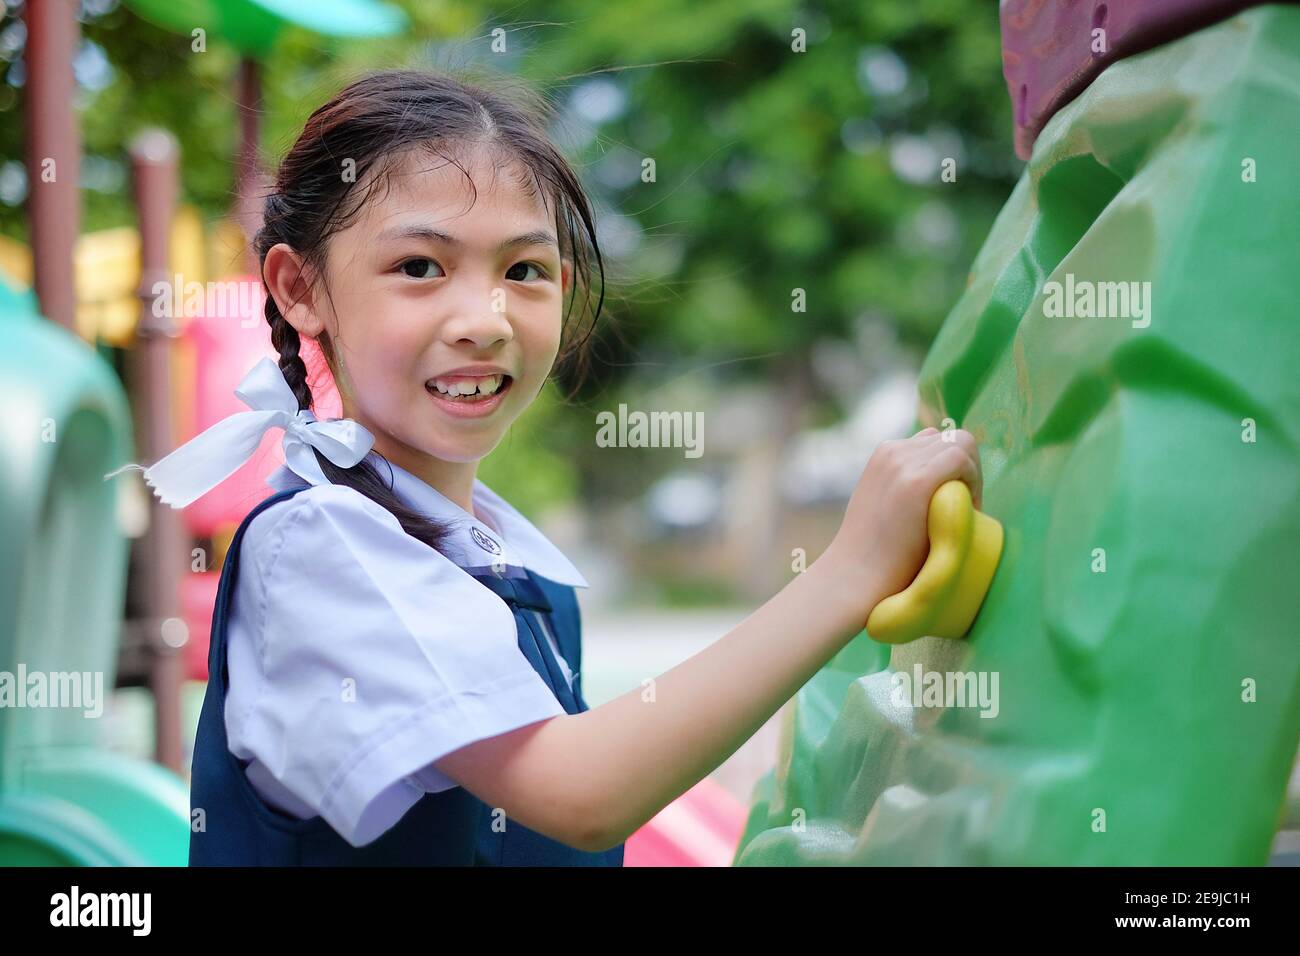 Une adorable jeune fille asiatique en uniforme blanc et bleu d'école joue à l'escalade dans un terrain de jeu, s'entraîner et s'amuser. Banque D'Images